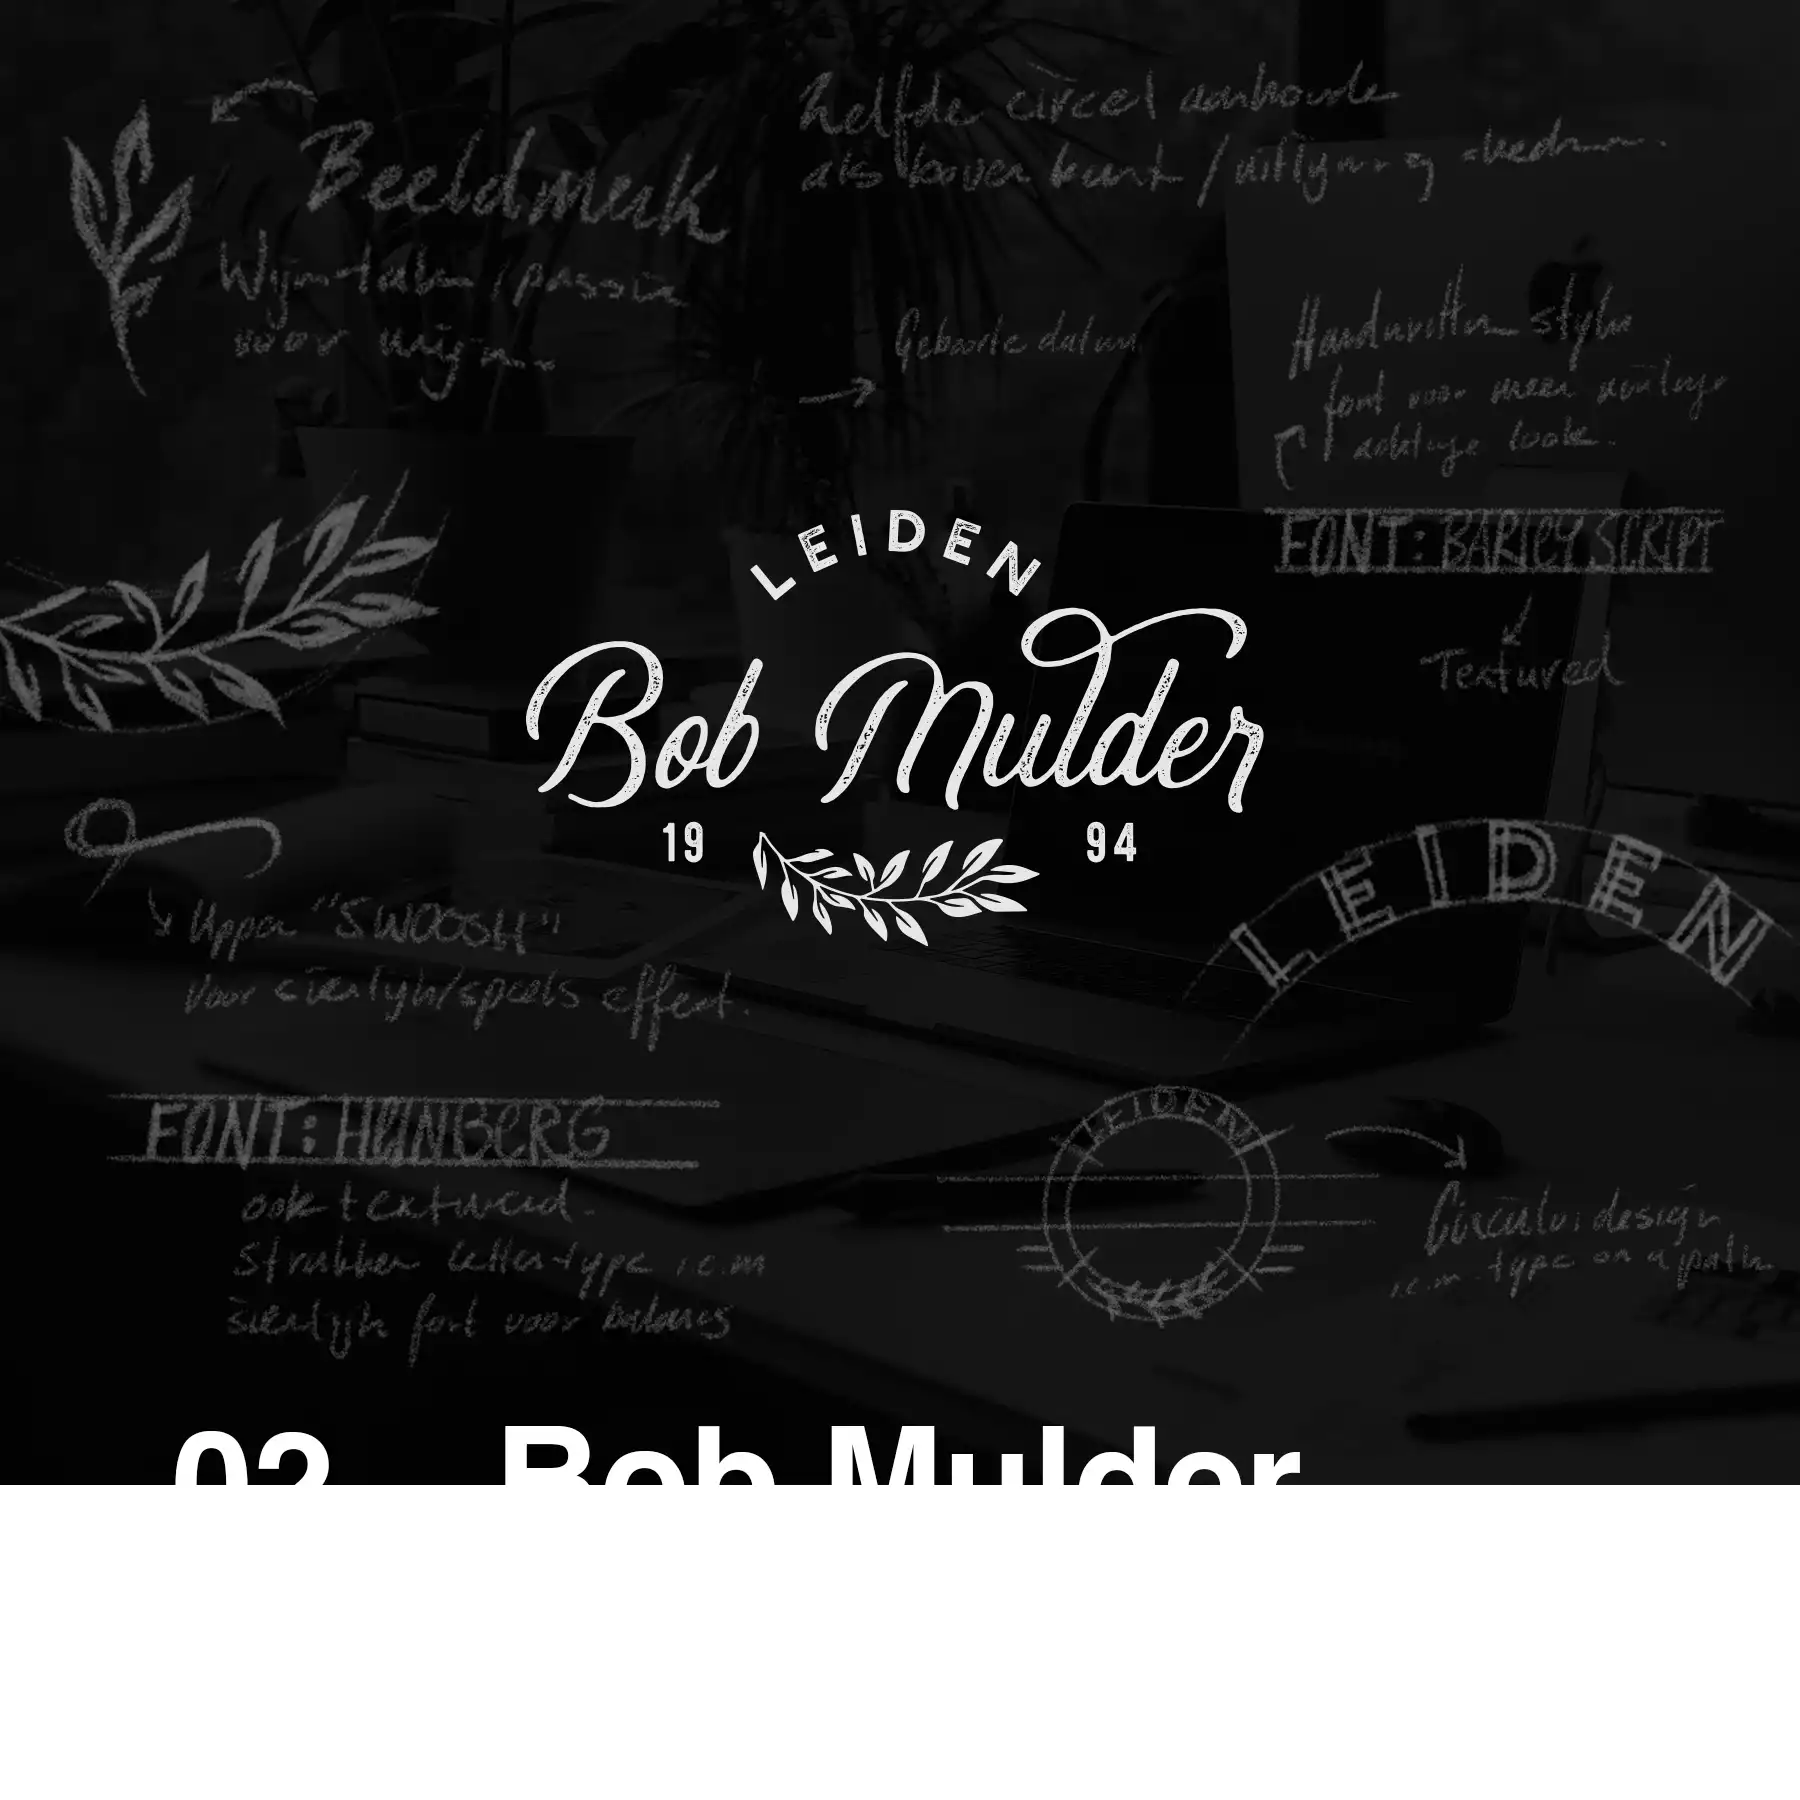 Bob Mulder case